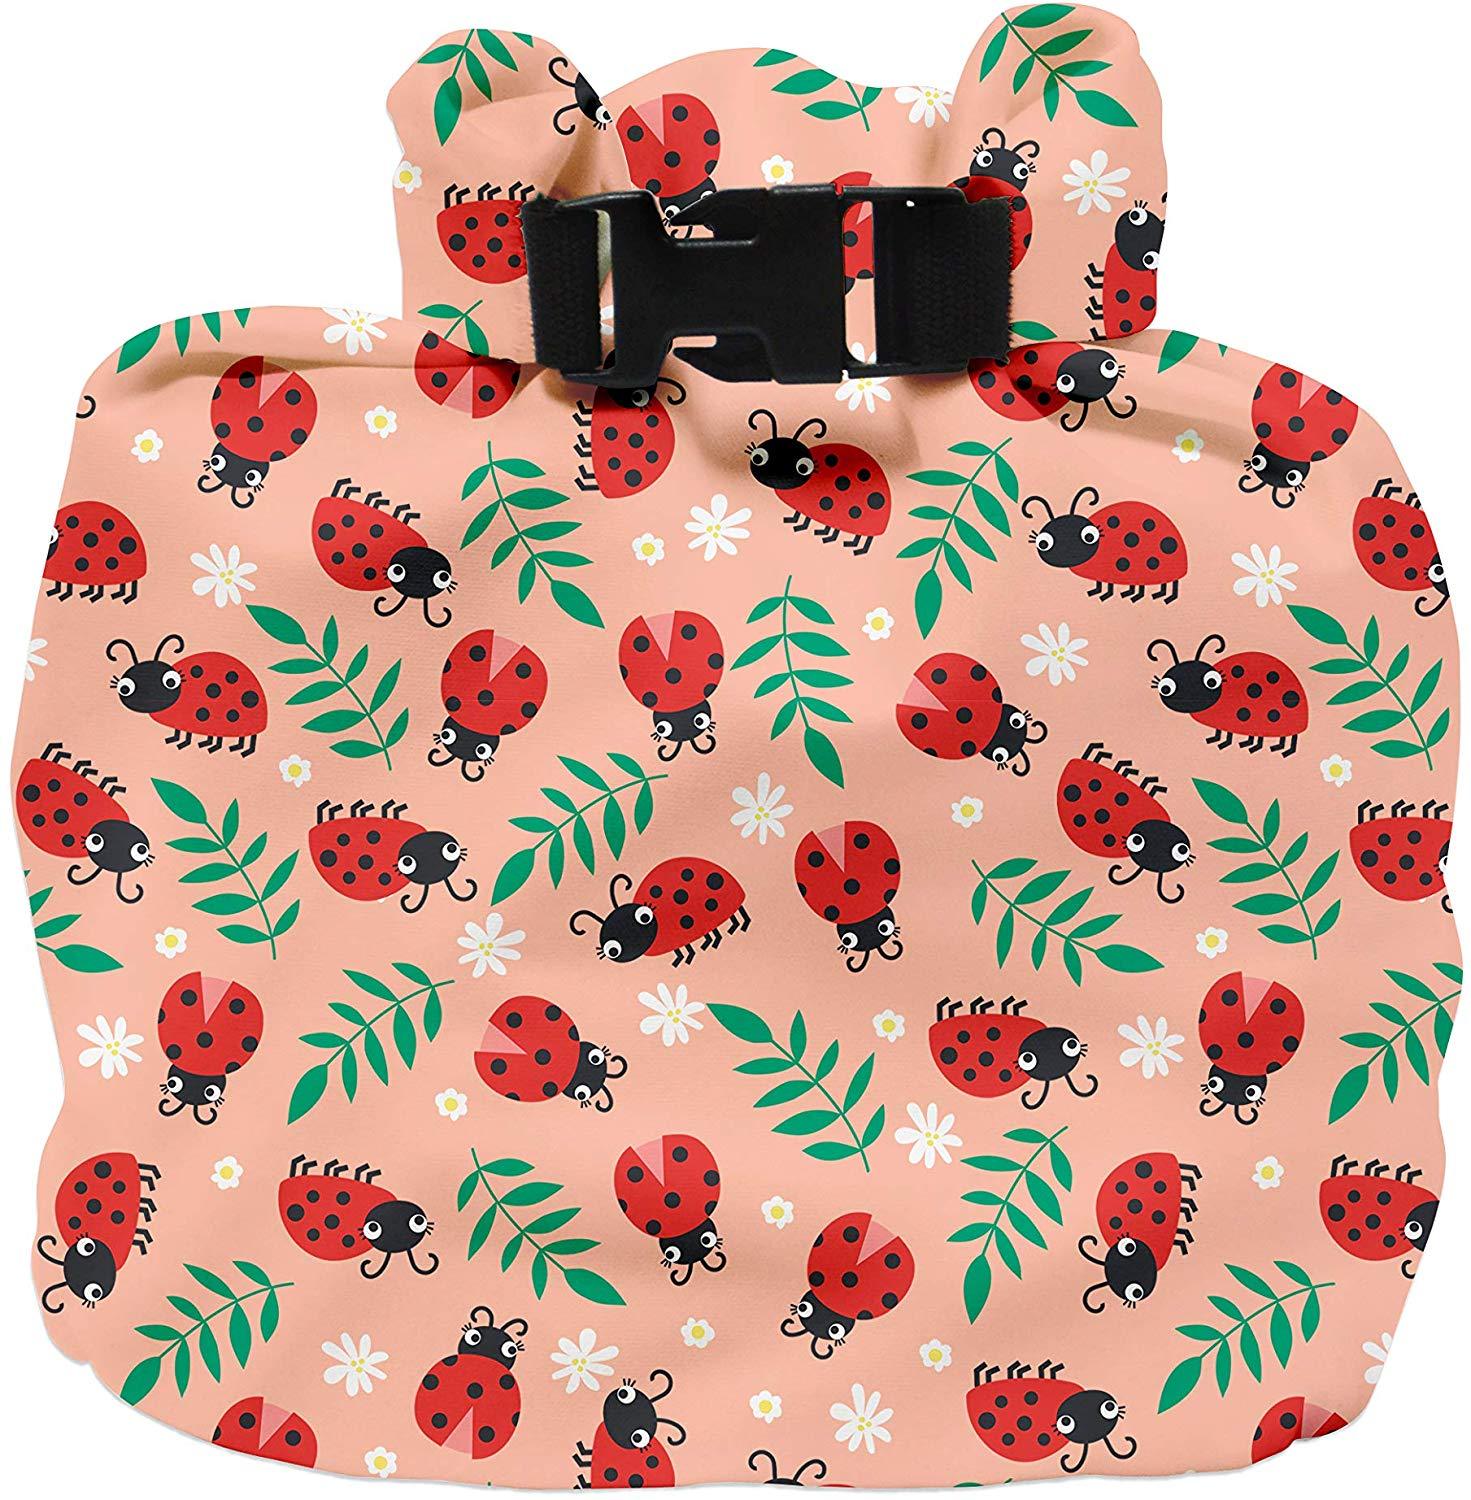 Bambino Mio - Mio Saco para transportar fraldas ou roupas molhadas Anne Claire Baby Store loveable ladybug 